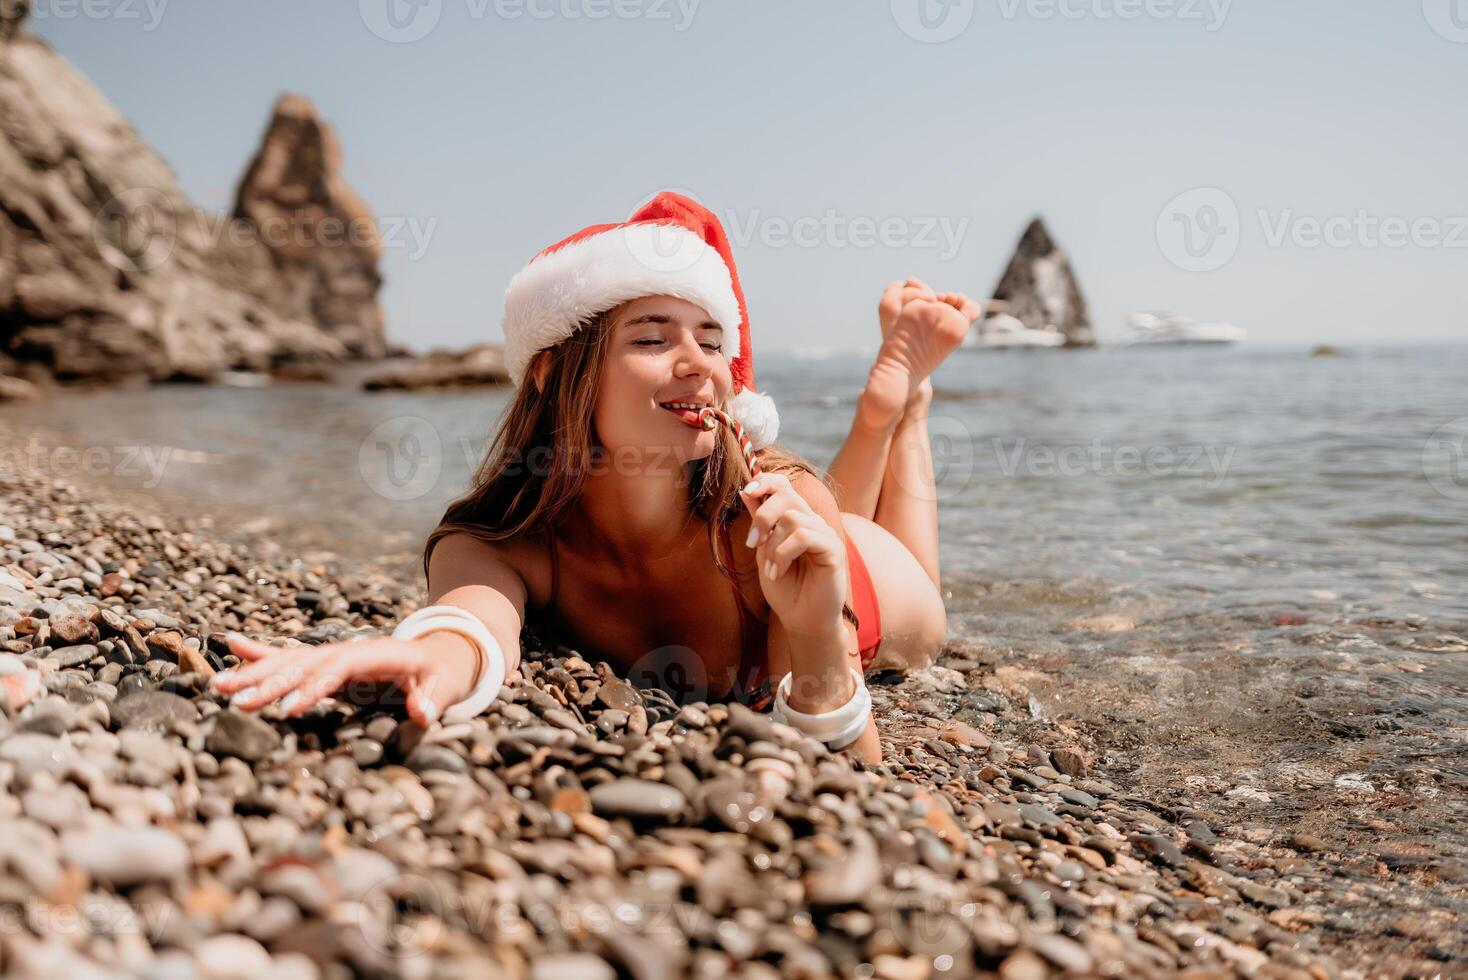 vrouw reizen zee. gelukkig toerist genieten nemen afbeelding Aan de strand voor herinneringen. vrouw reiziger in de kerstman hoed looks Bij camera Aan de zee baai, sharing reizen avontuur reis foto